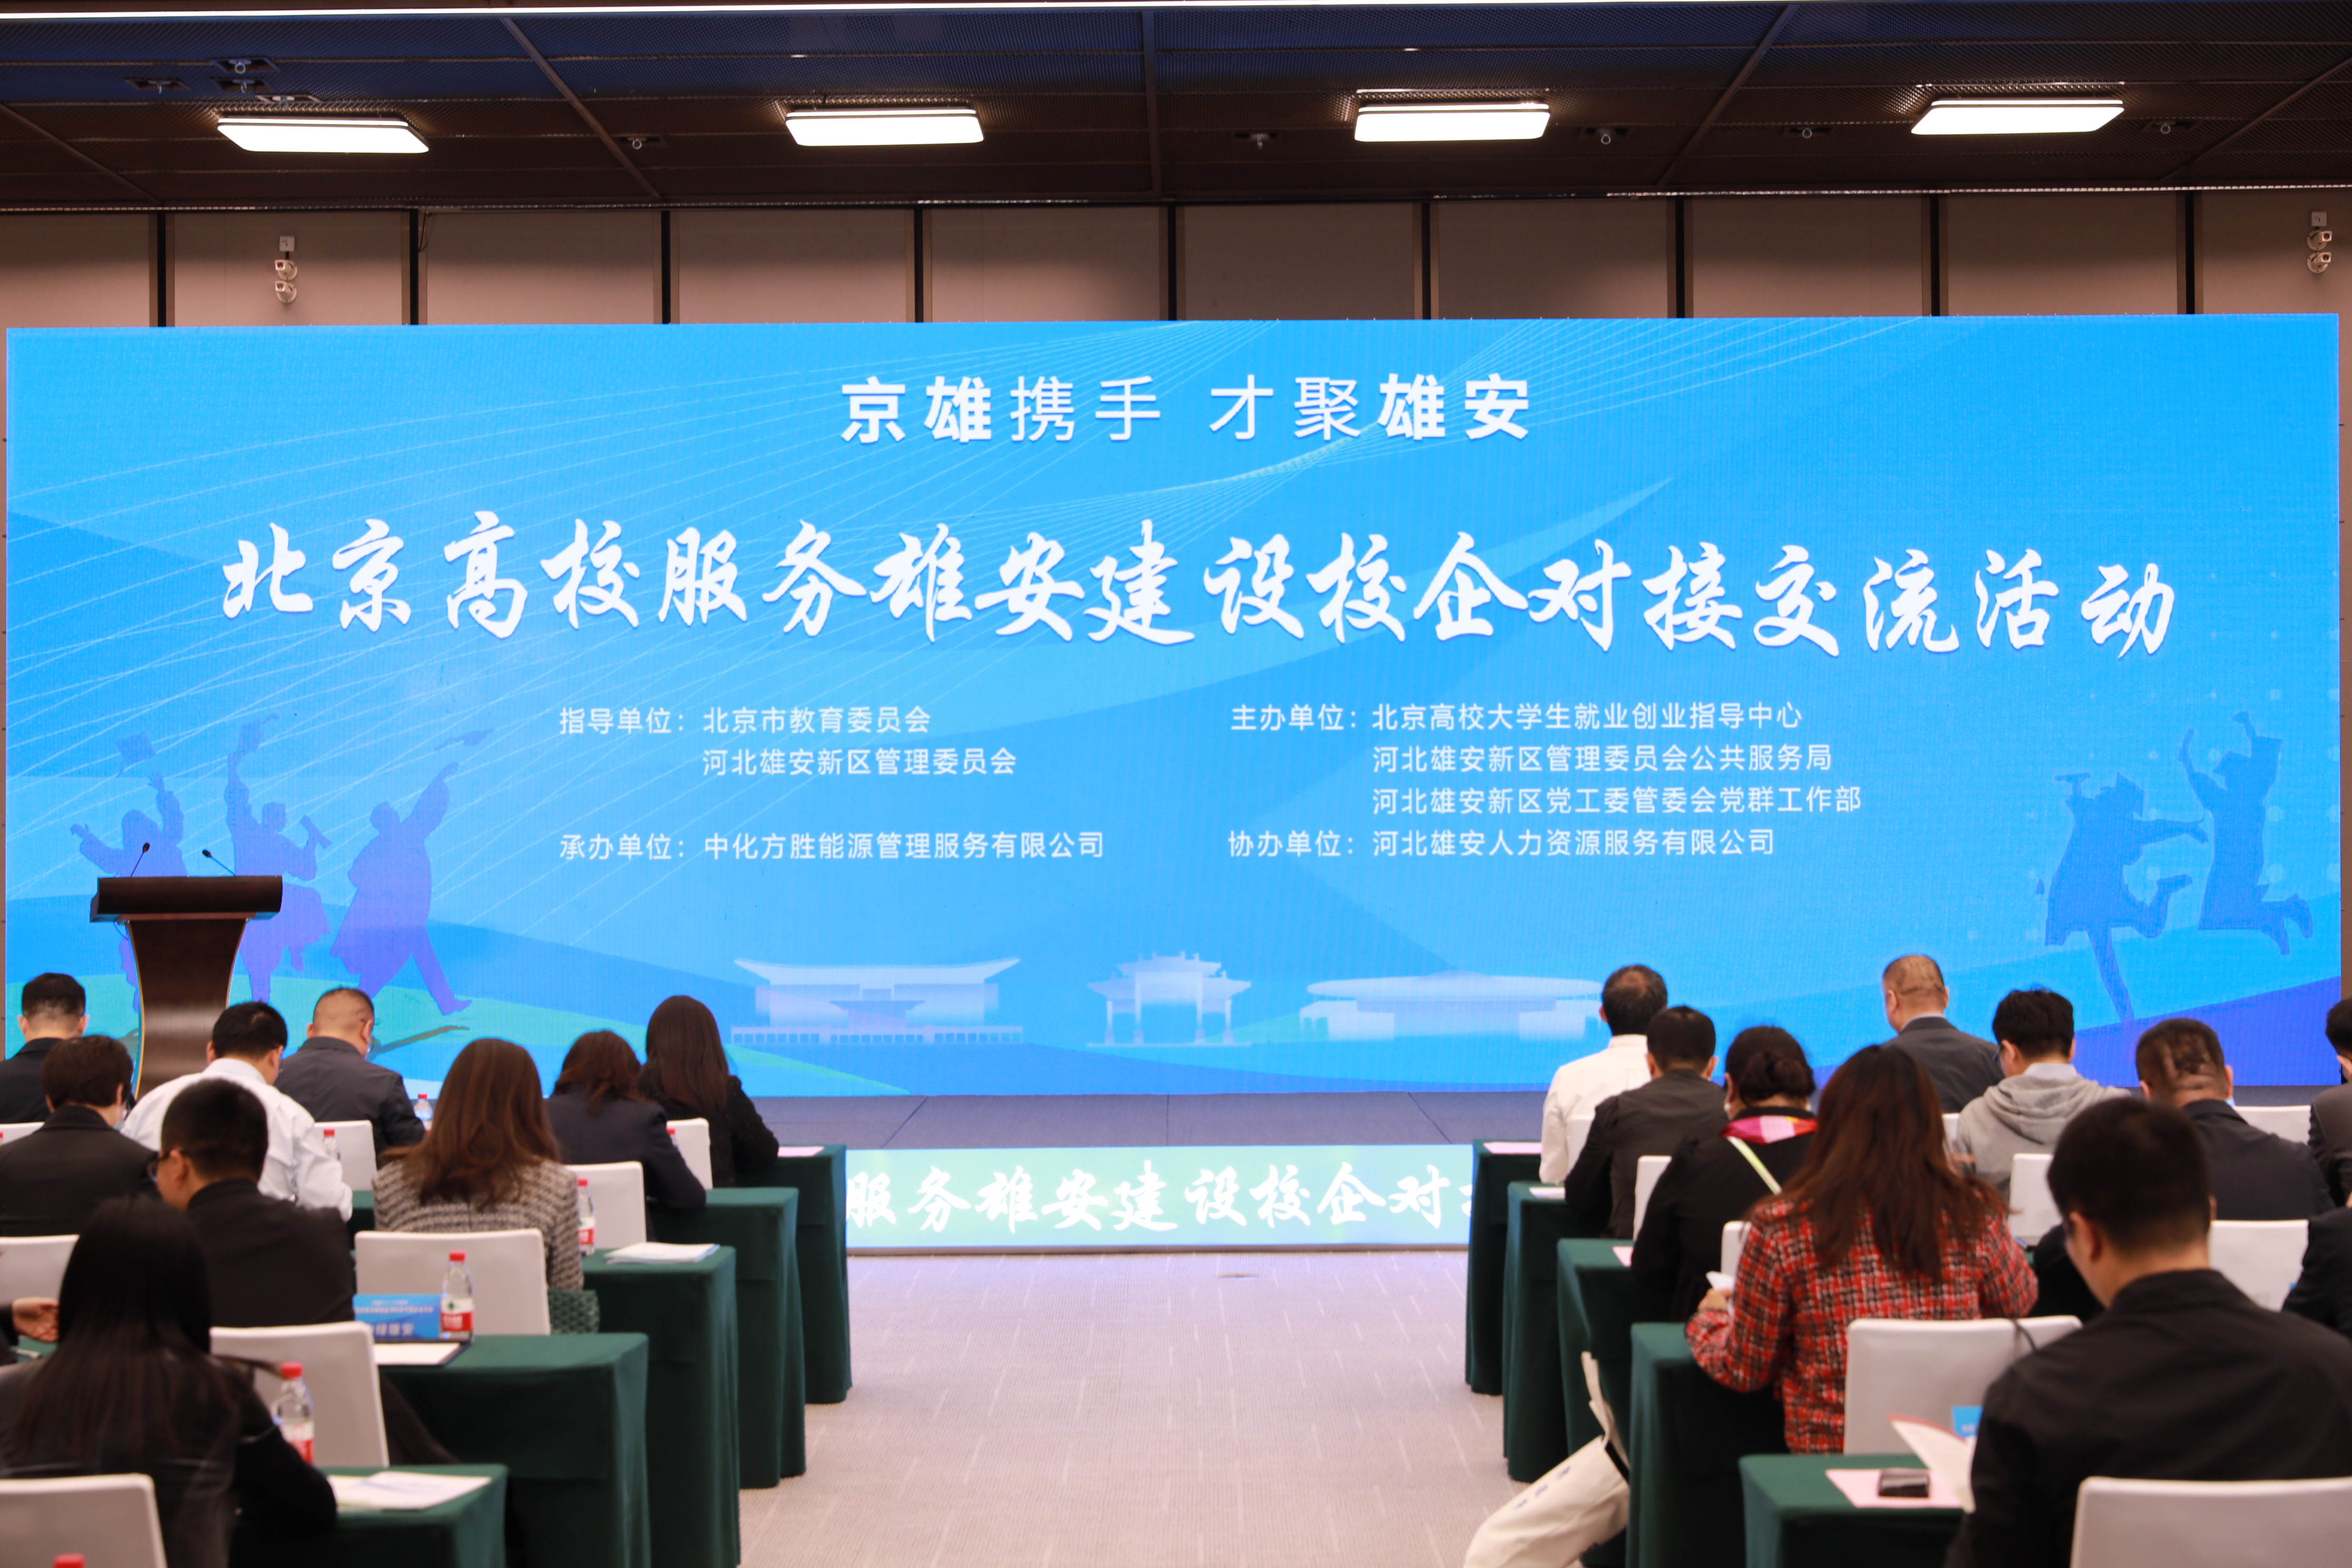 北京高校服务雄安建设校企对接交流活动。